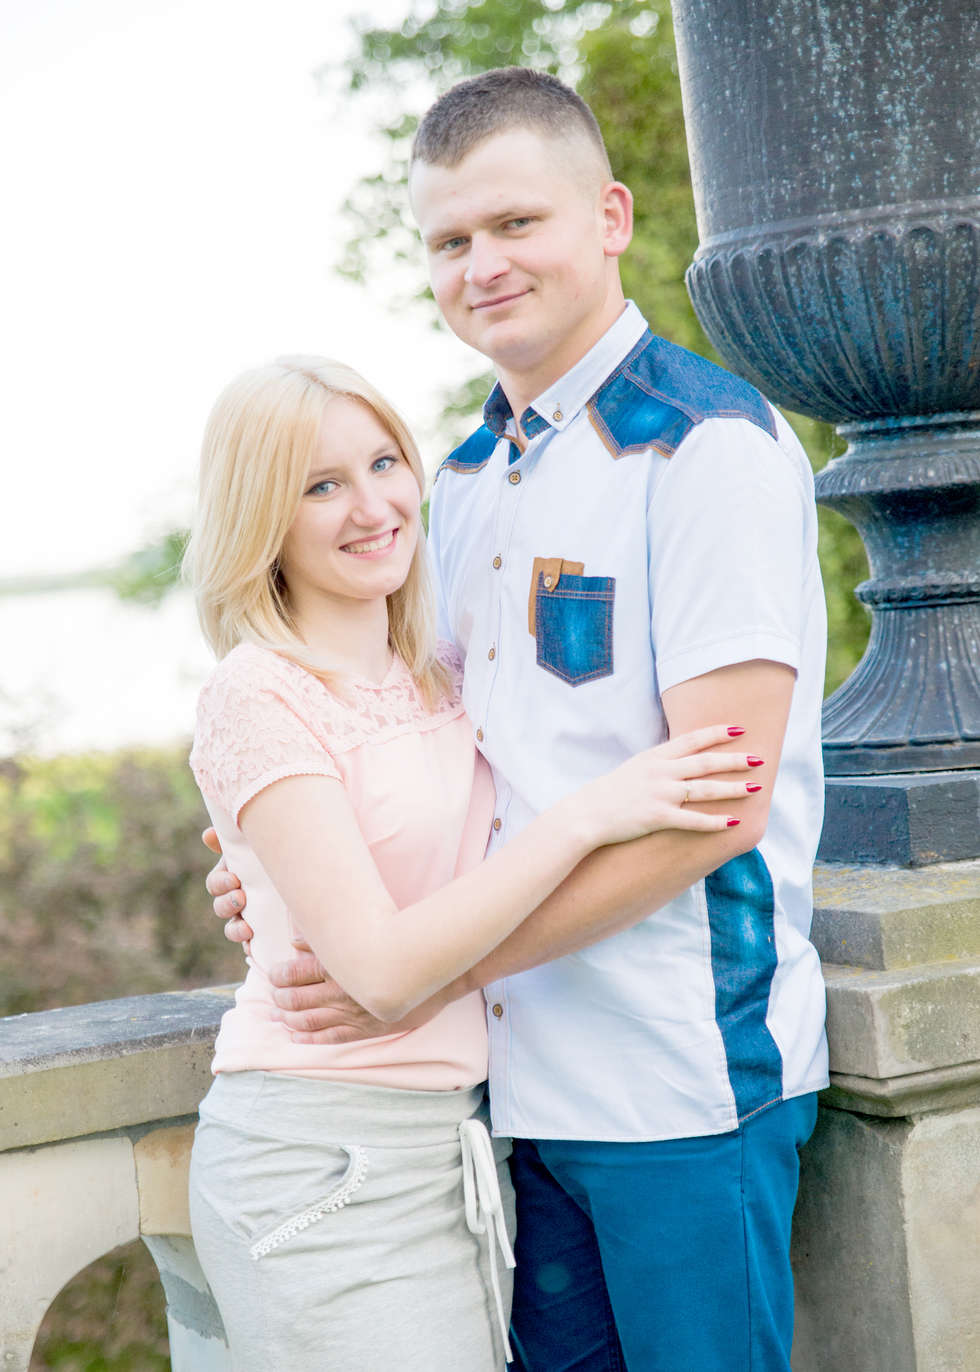  <p>31. Izabela Piekarska i Arkadiusz Paszkowski</p>
<p>Poznali się w 2011 r. Ona mieszka w Płudach, on w Tch&oacute;rzewie. Ślub planują wziąć 22 kwietnia 2017 r.</p>
<p>SMS o treści SLUB.31 pod nr 7248</p>